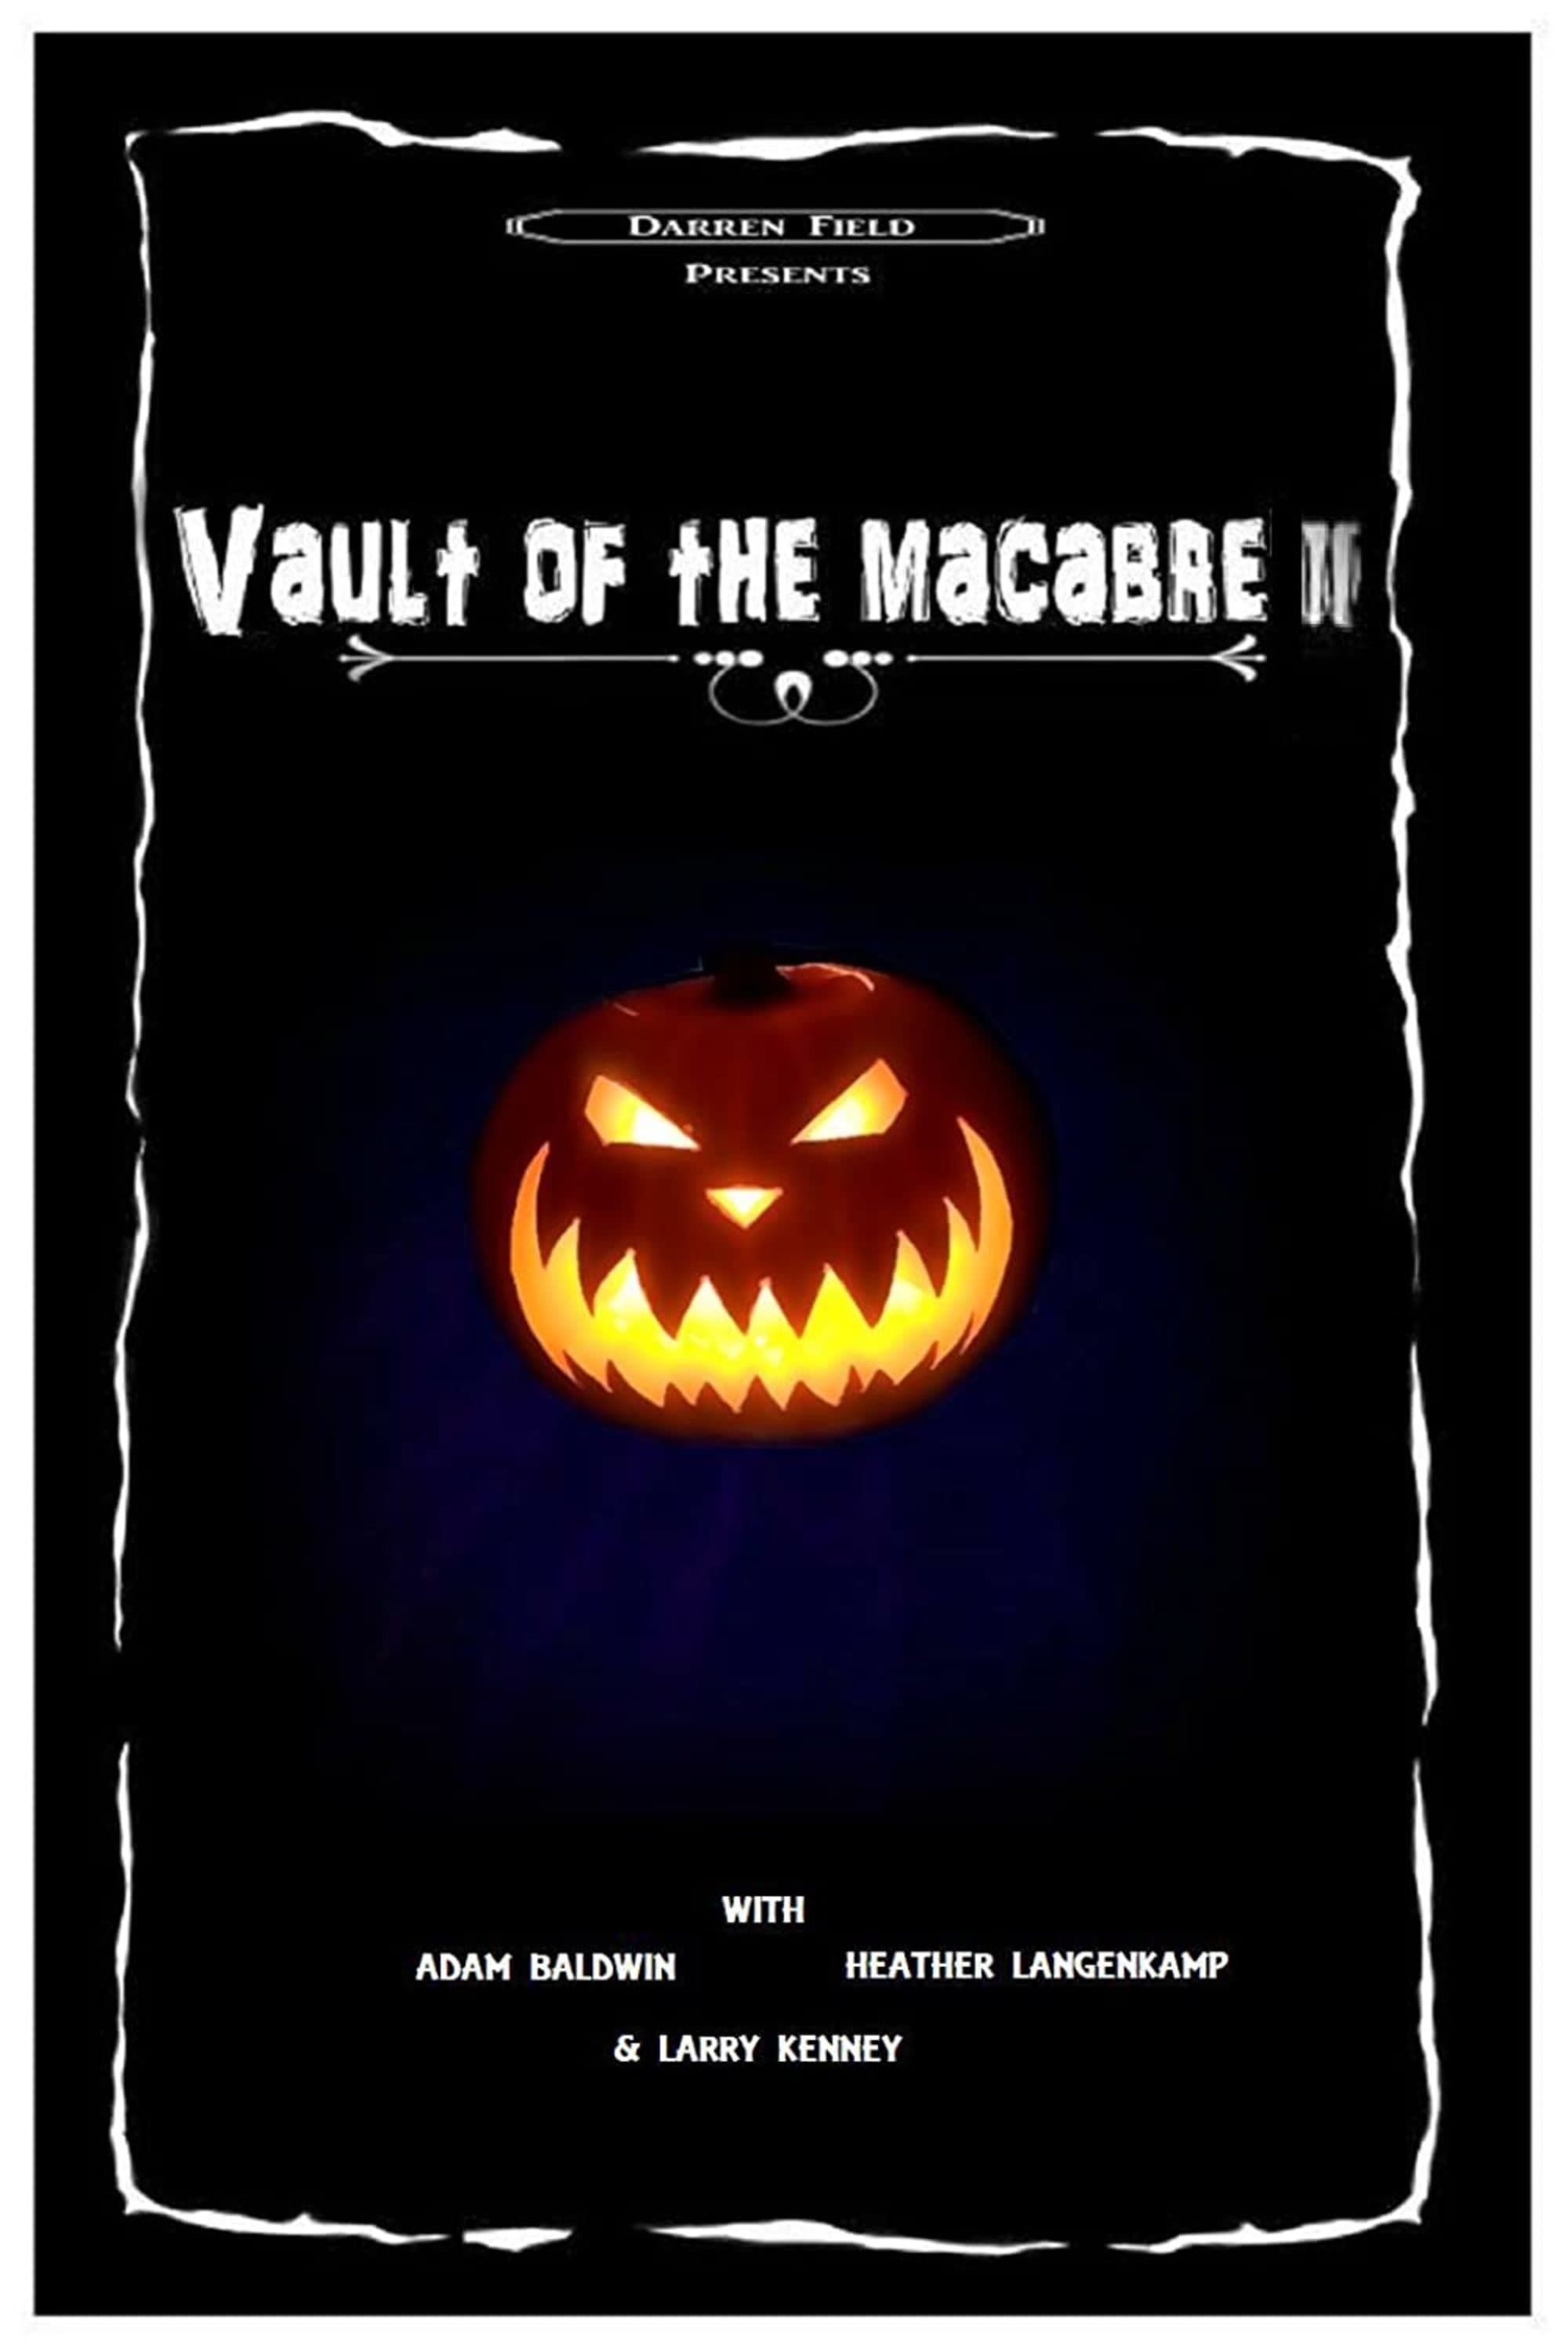 Vault of the Macabre II